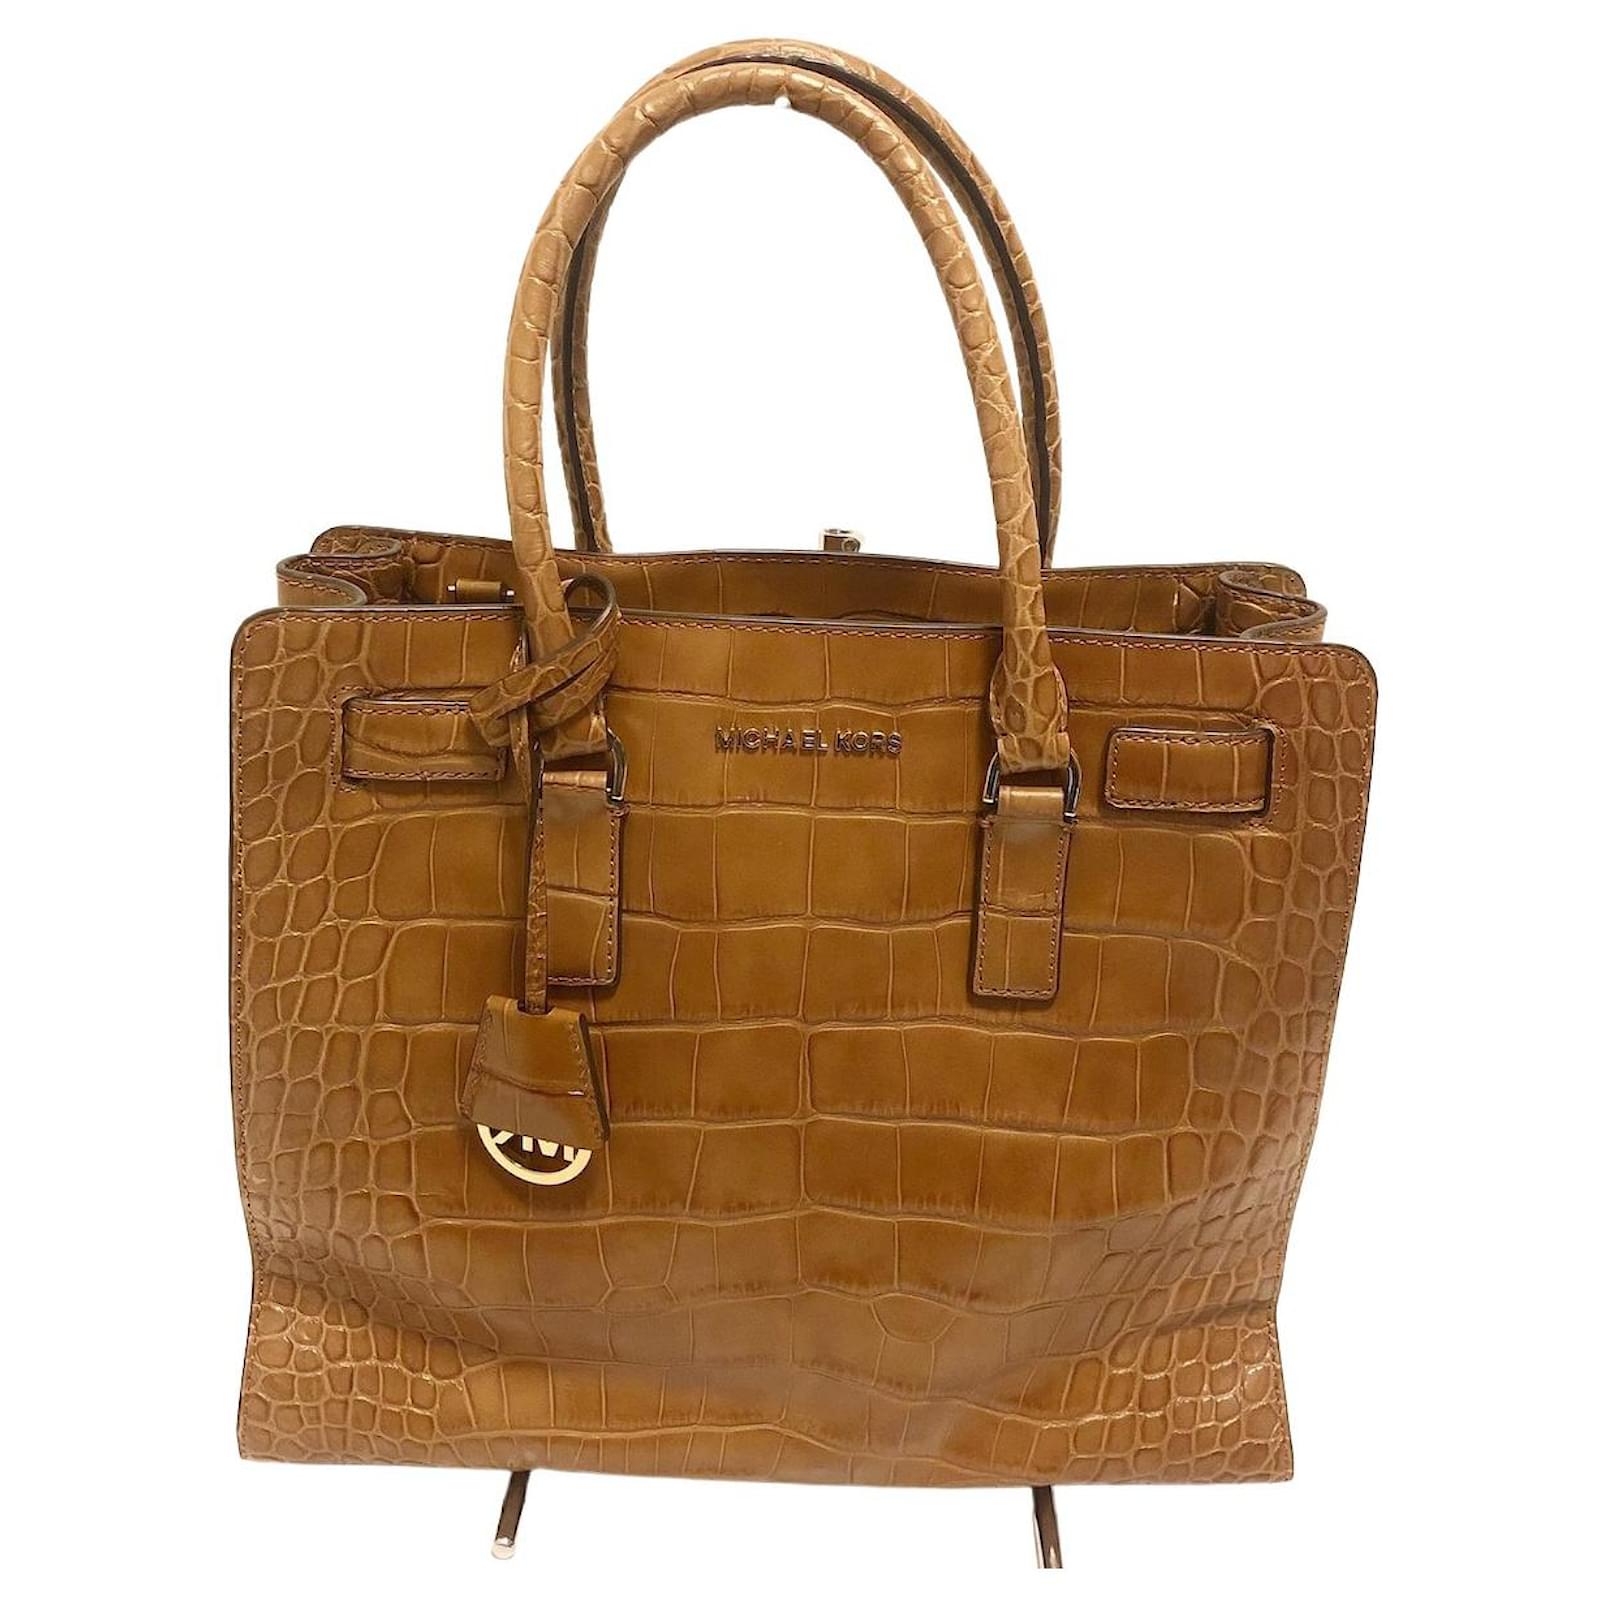 MICHAEL KORS: handbag for woman - Camel